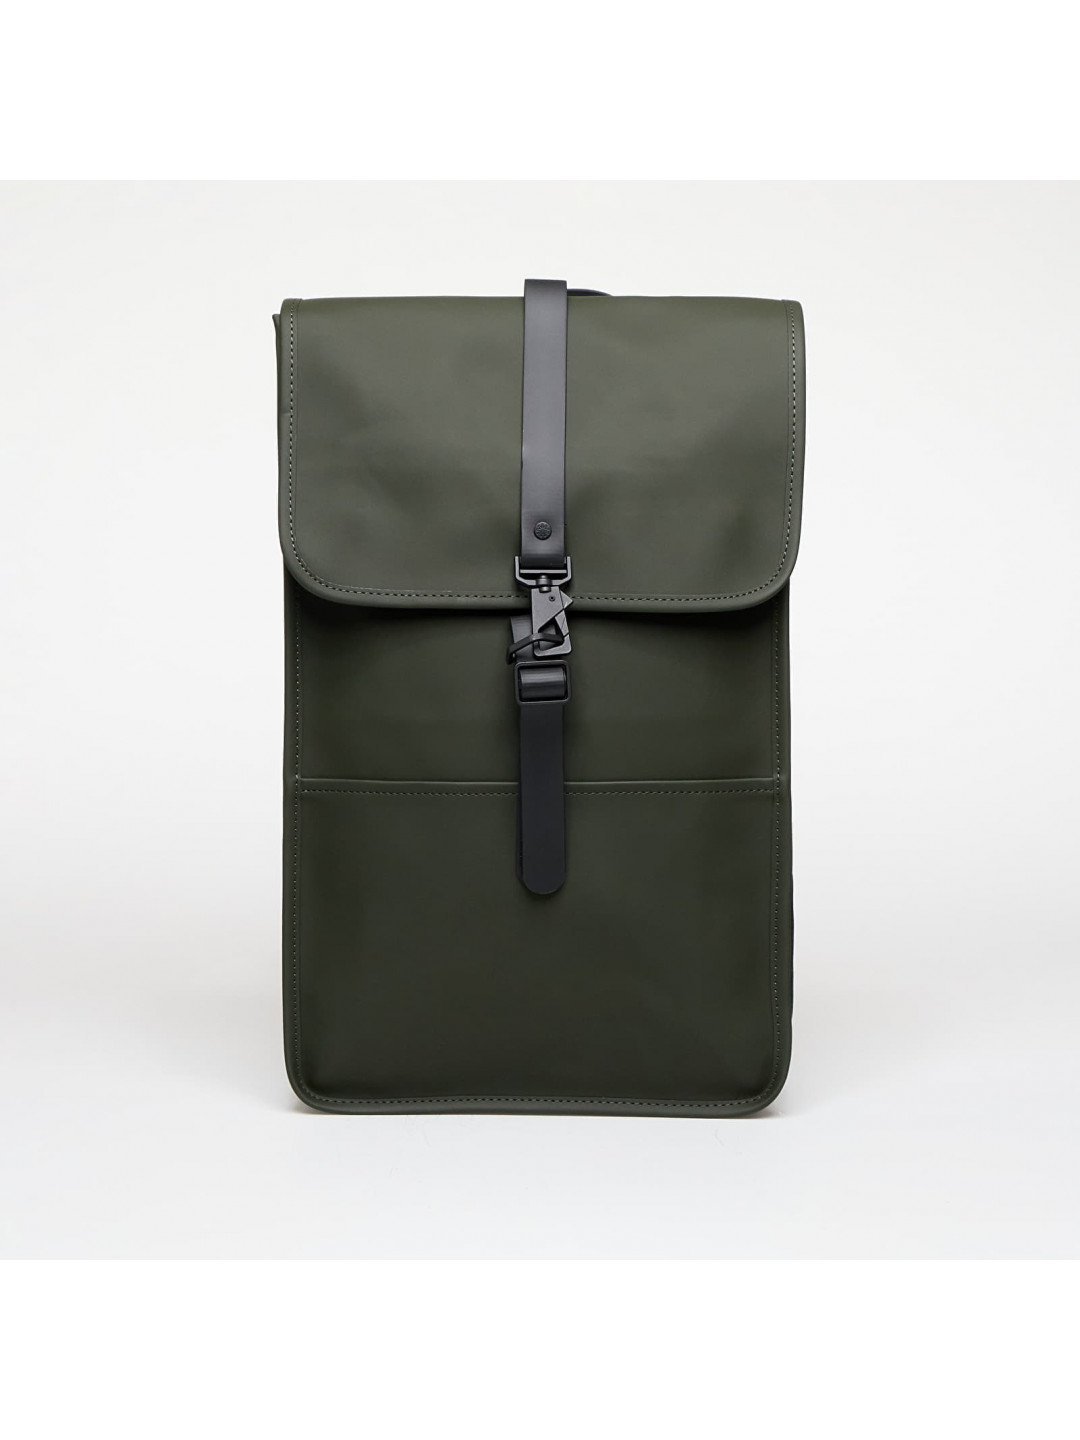 Rains Backpack W3 03 Green